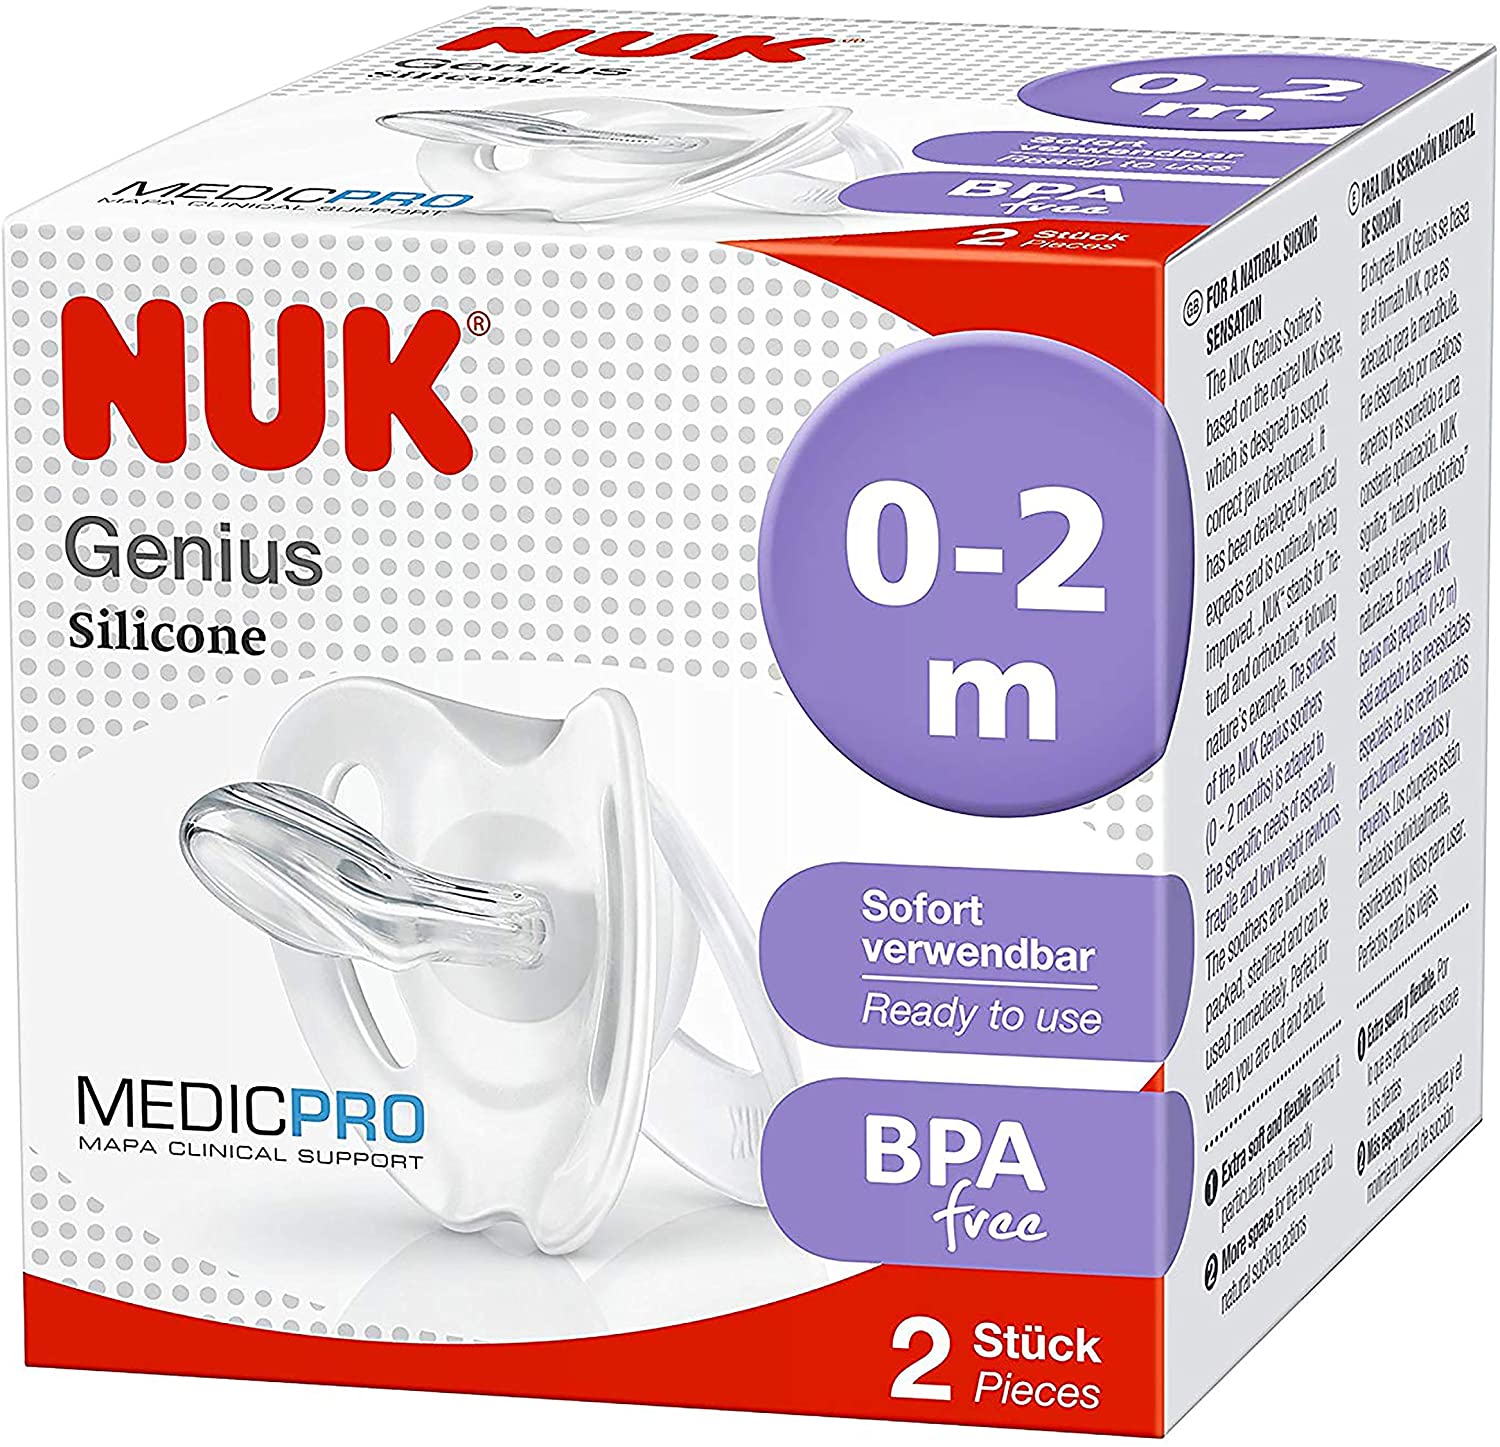 NUK Medic Pro Genius New Born Dummies